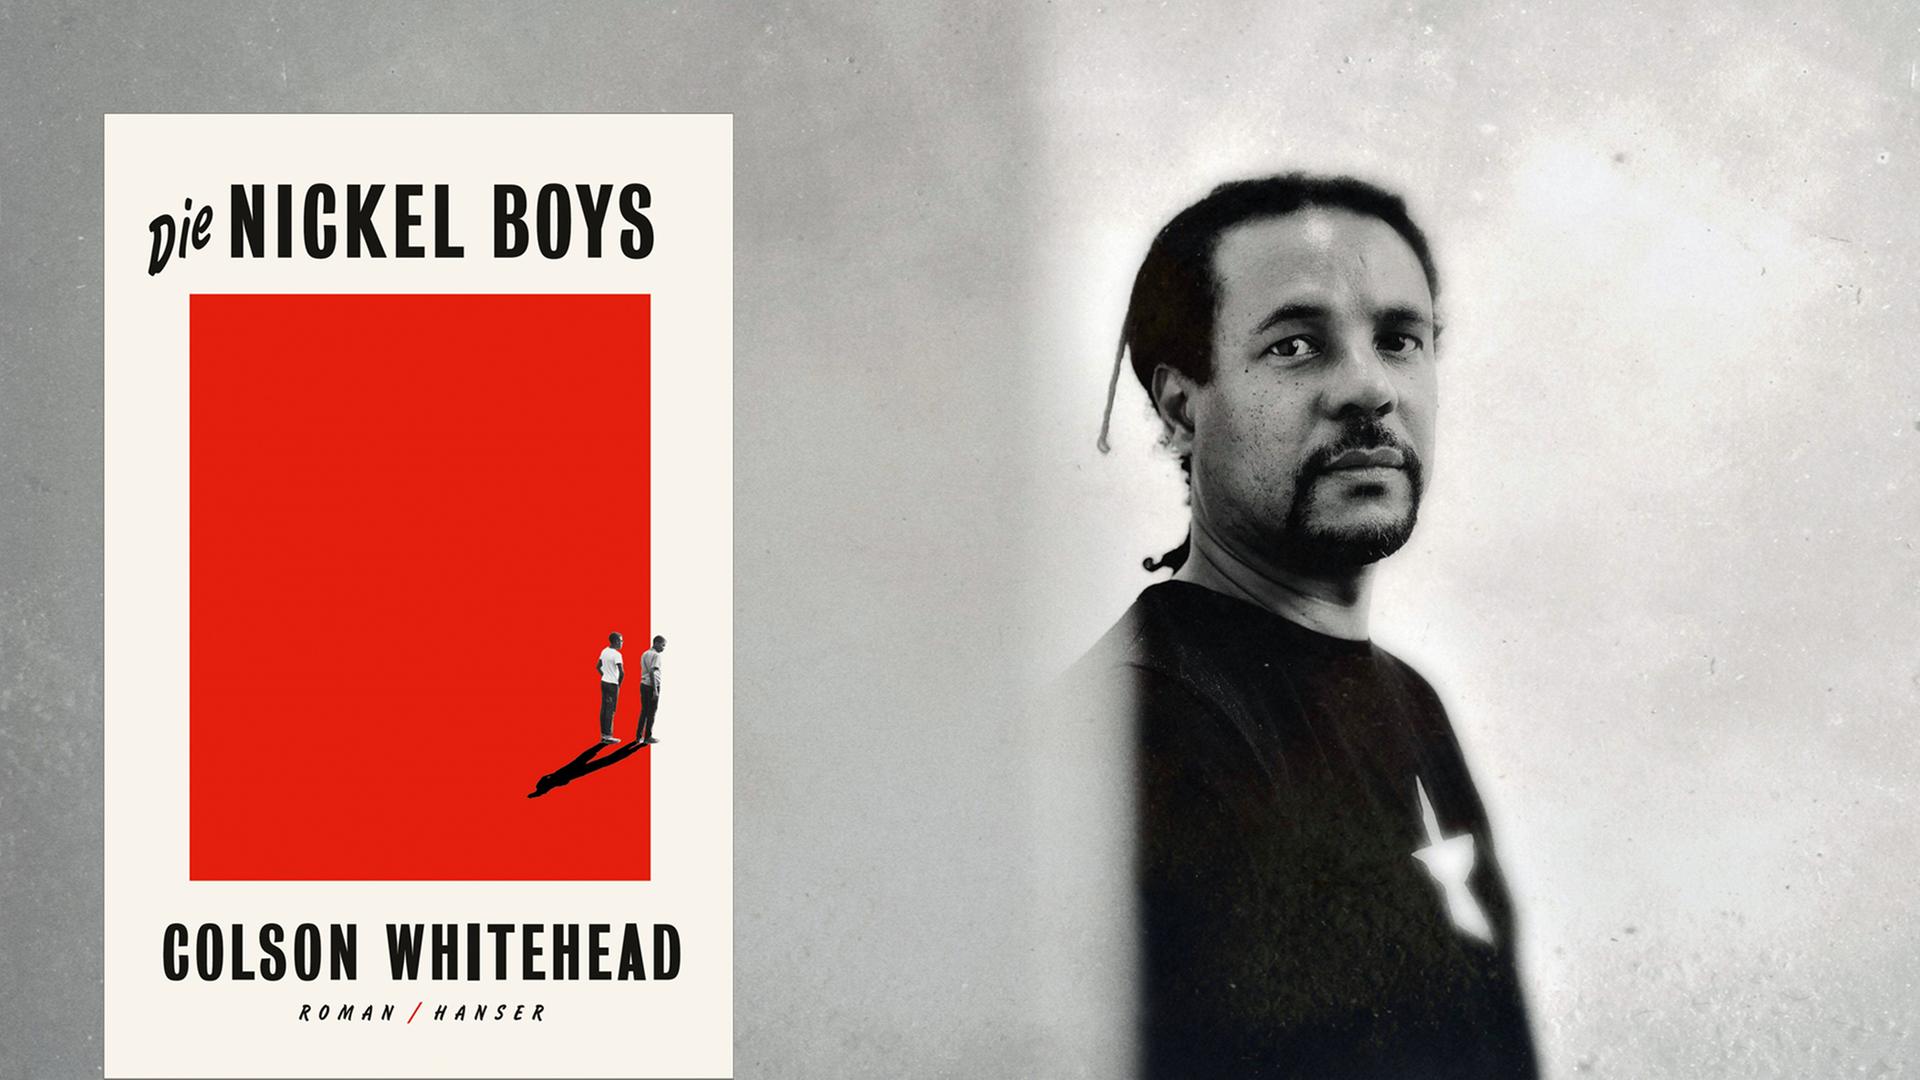 Eine Combo zeigt das Buchcover "Die Nickel Boys" neben einem Porträt von Colson Whitehead.